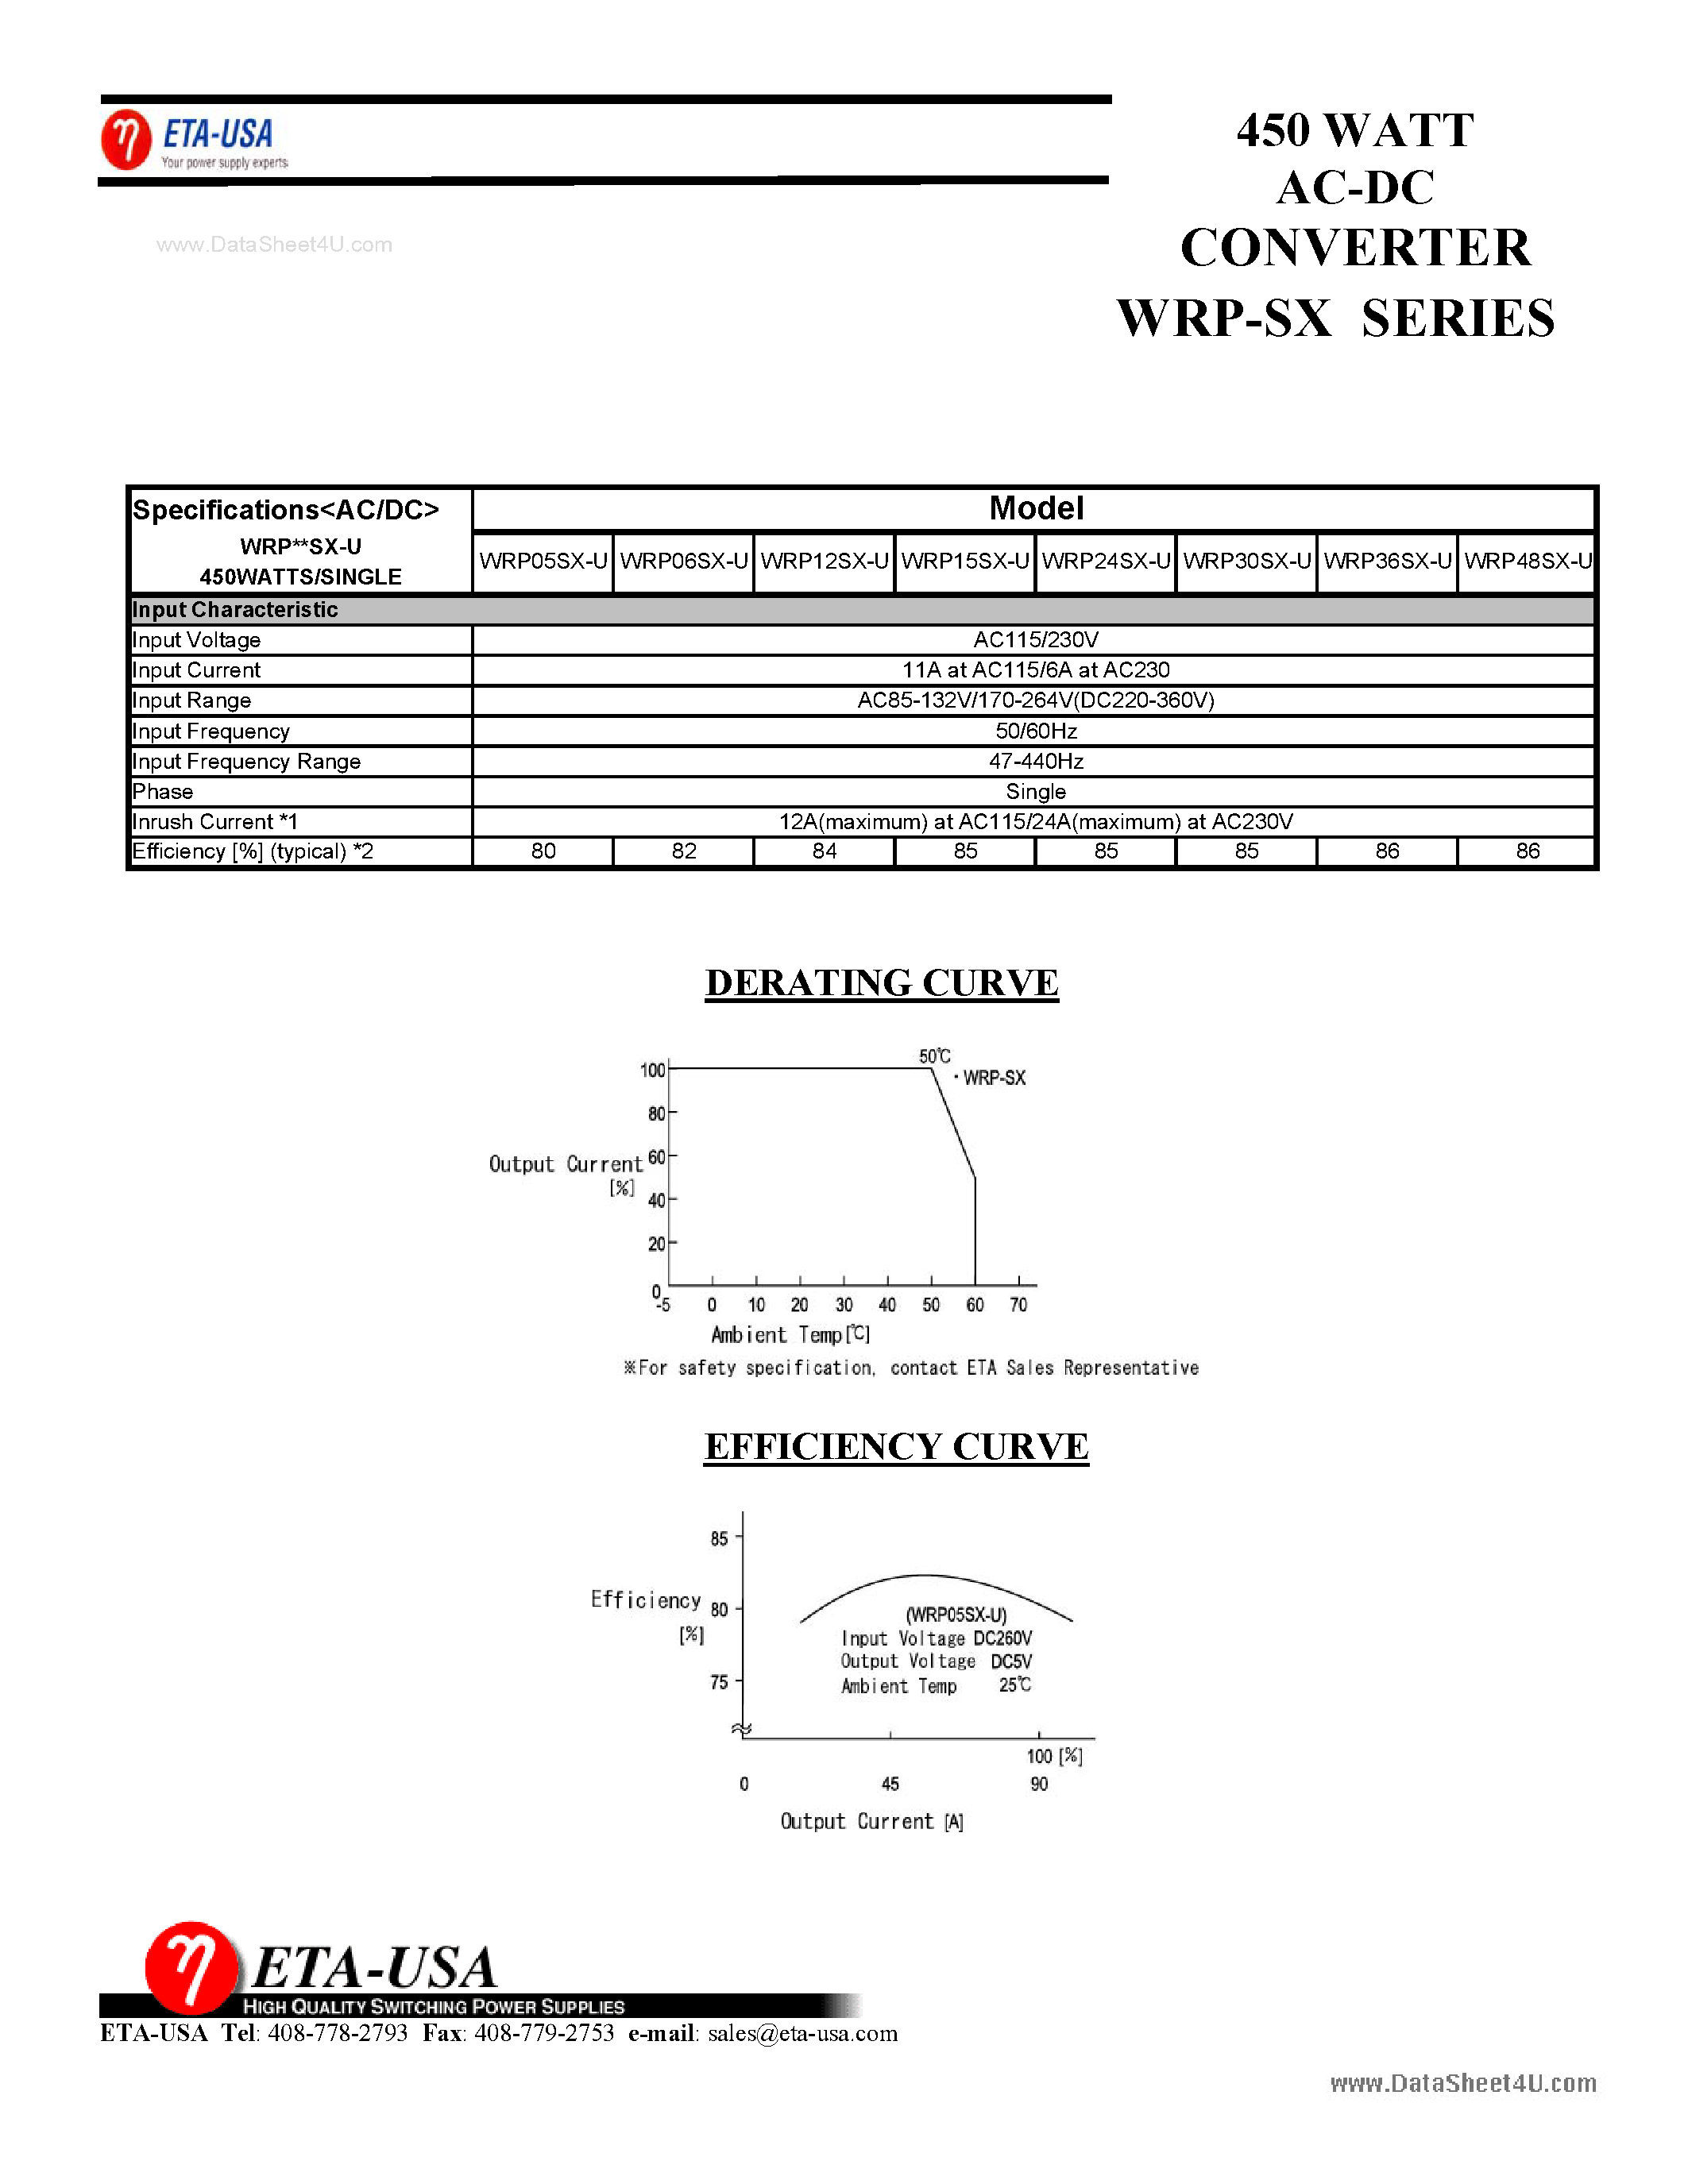 Datasheet WRP05SX-U - (WRP1xSX-U) 450W AC-DC Converter page 1